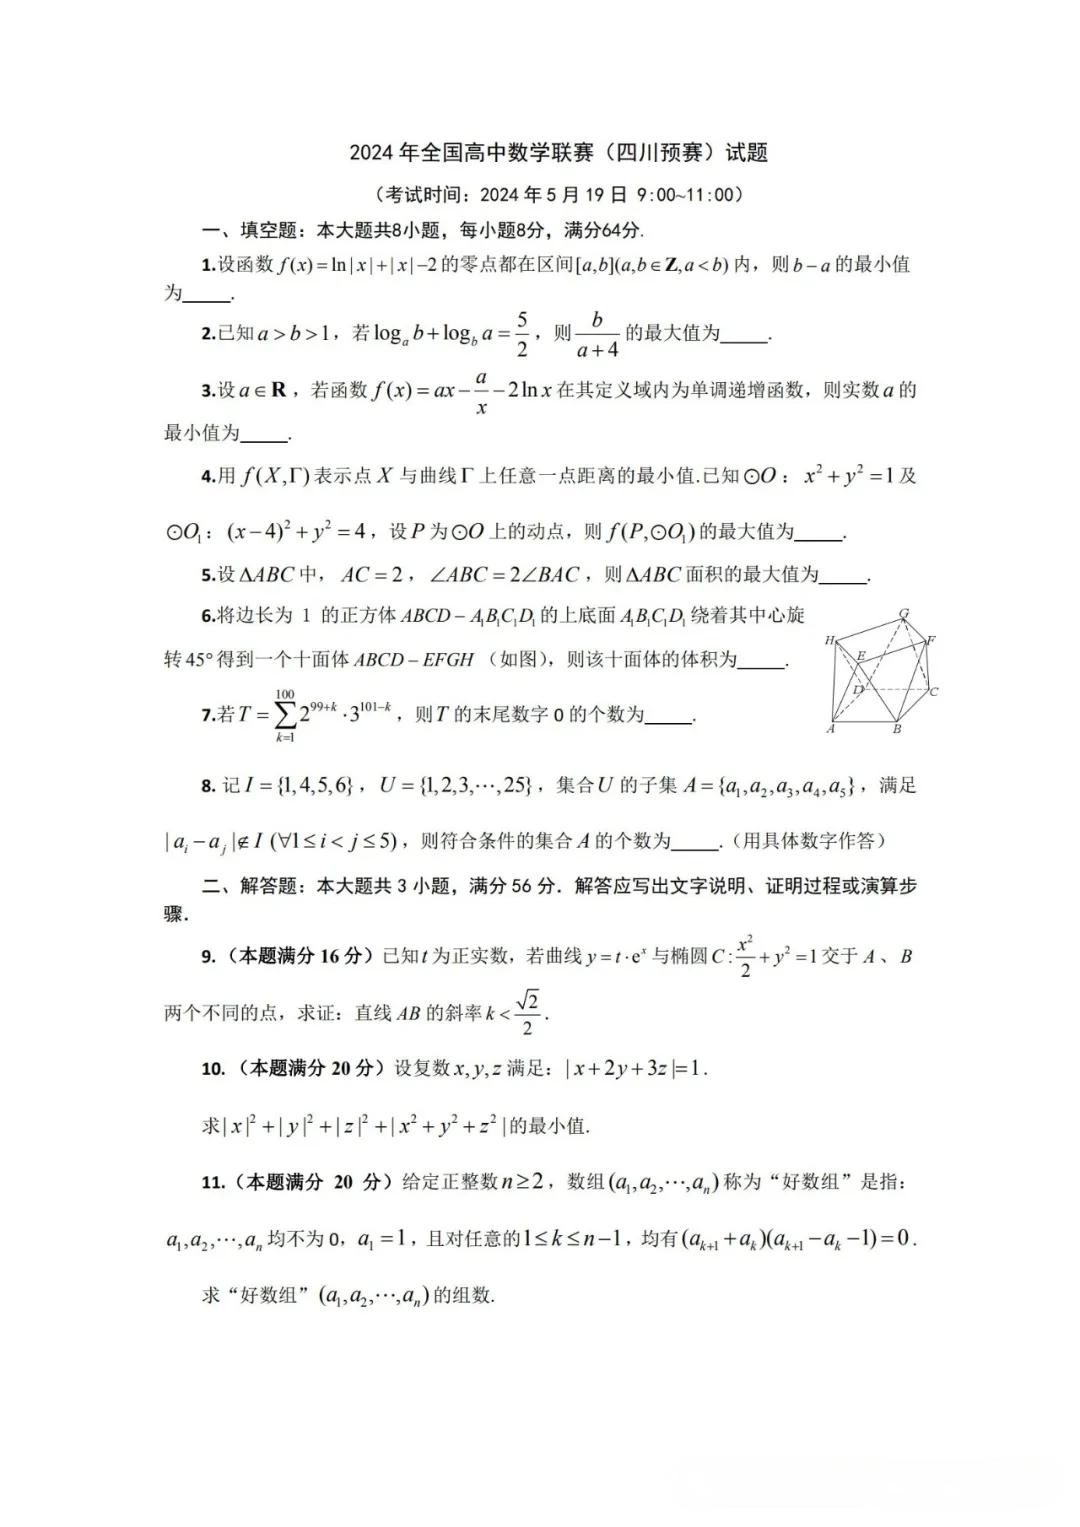 四川省2024年高中数学竞赛初赛试题